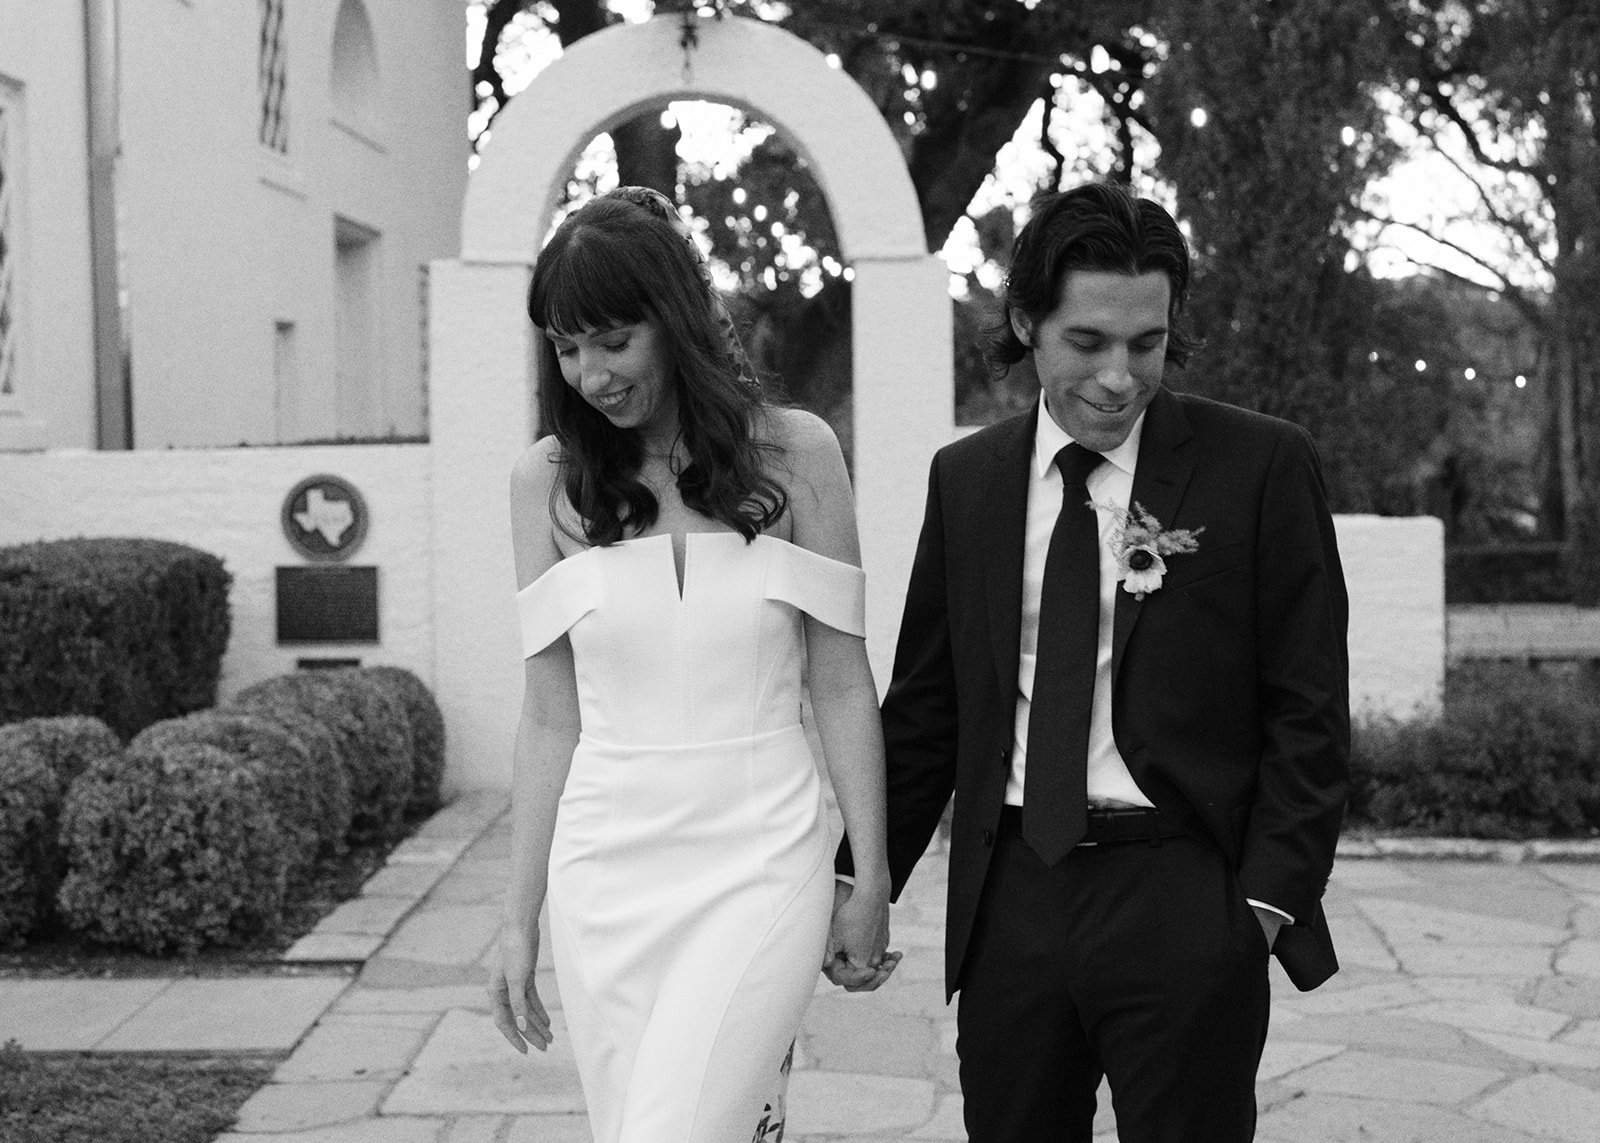 Best-Austin-Wedding-Photographers-Elopement-Film-35mm-Asheville-Santa-Barbara-Laguna-Gloria-91.jpg